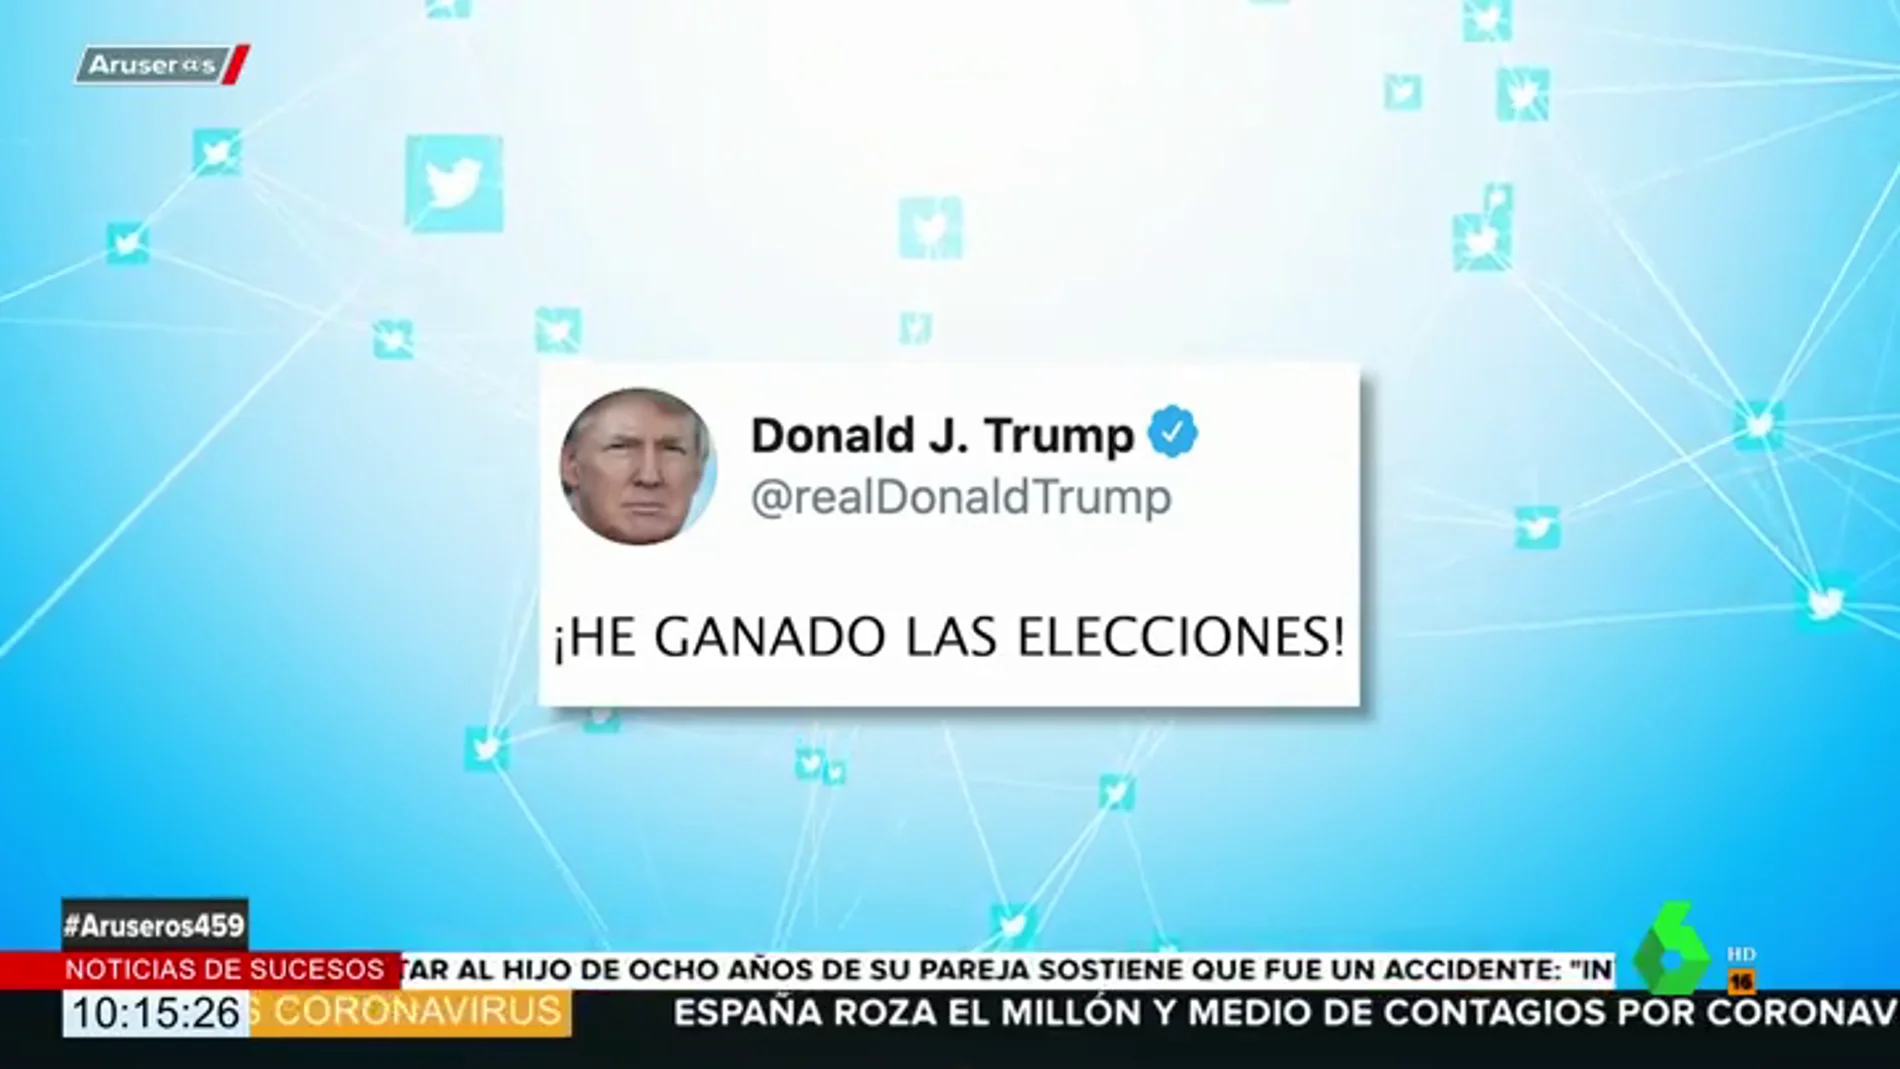 El troleo de las redes sociales a Trump tras decir que ha ganado las elecciones en Estados Unidos